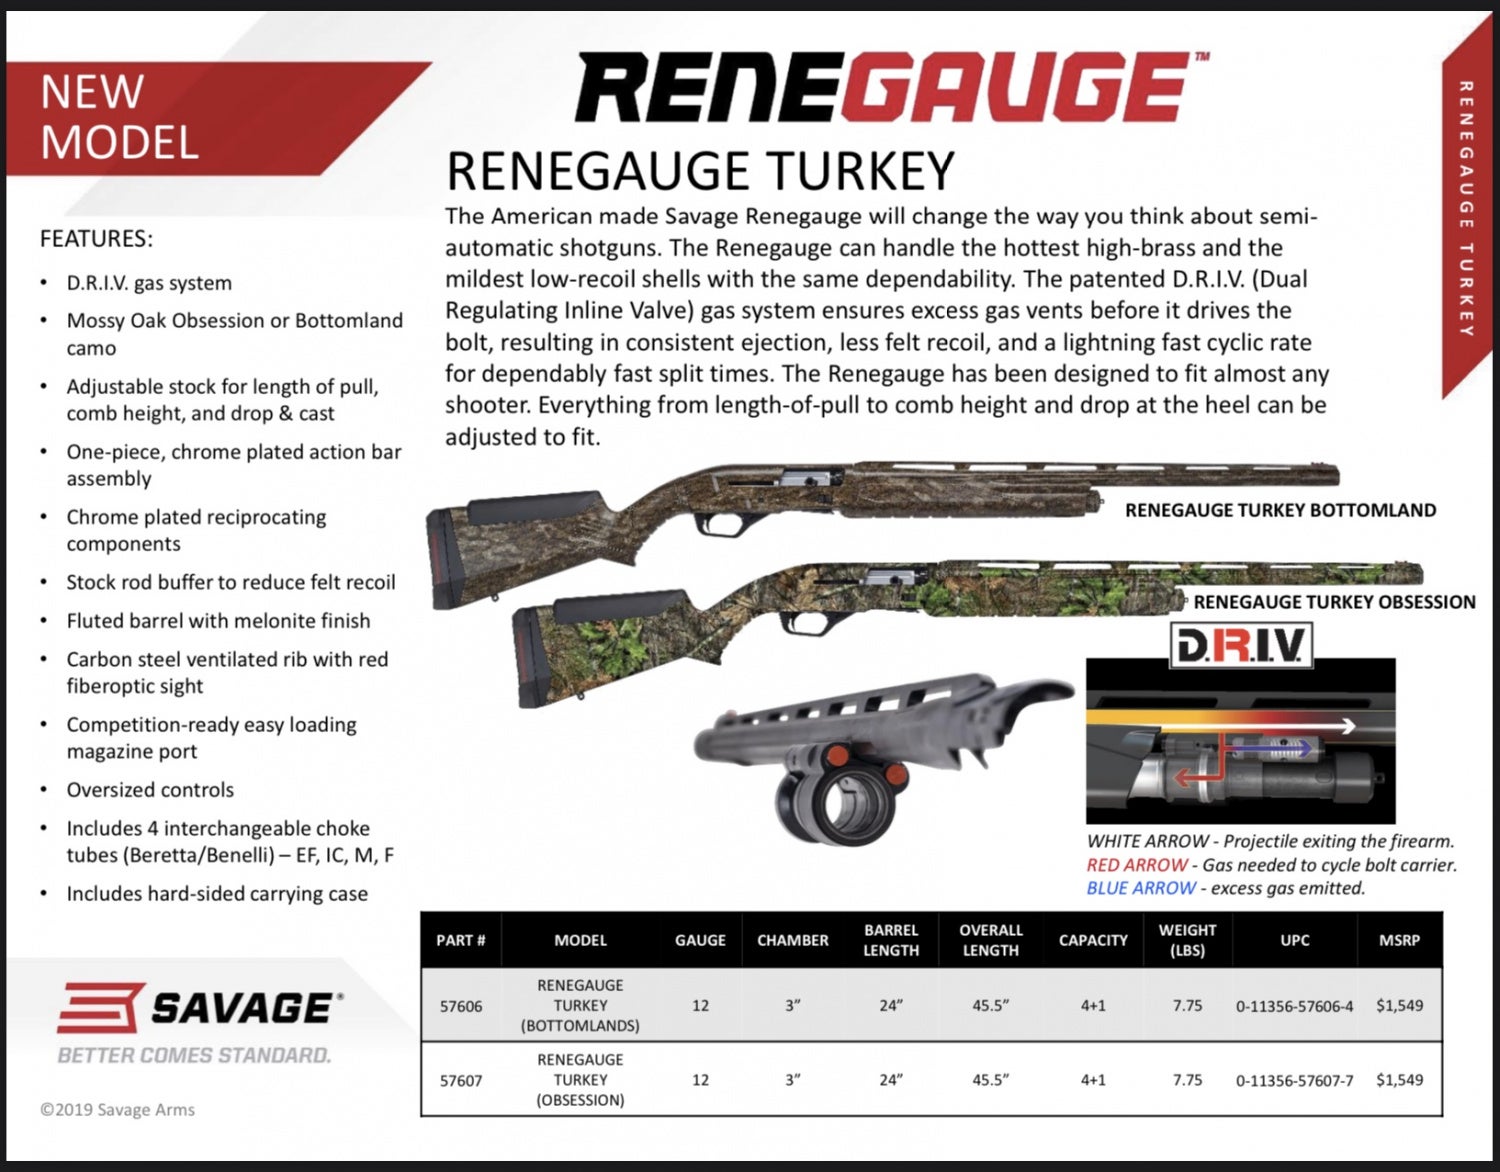 Savage Arms RENEGAUGE - Rifle Maker’s First Semiautomatic Shotgun